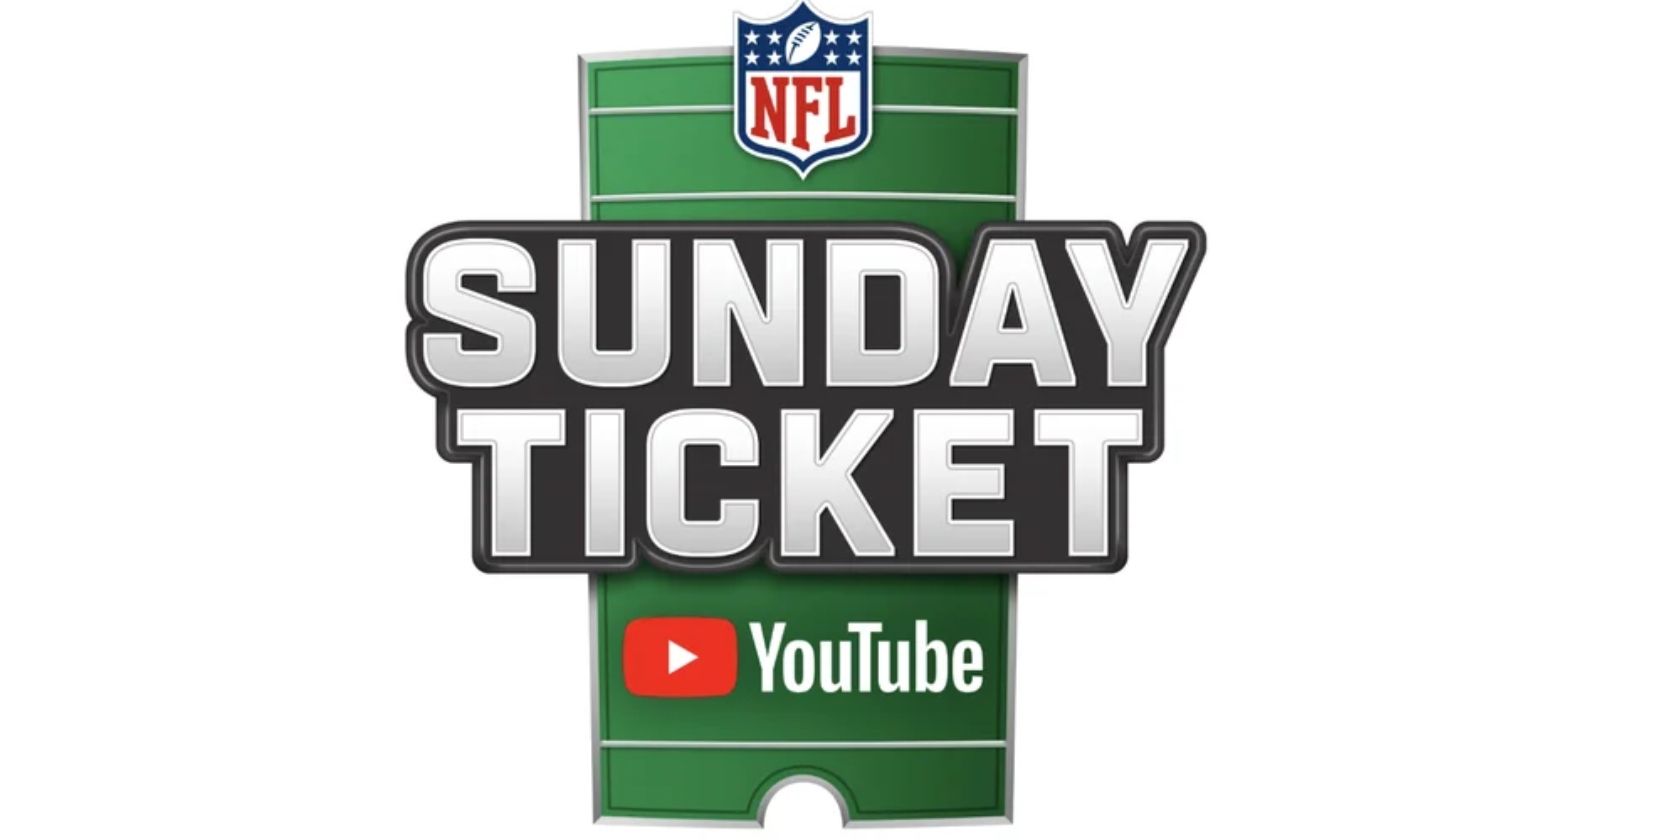 YouTube NFL Sunday ticket image